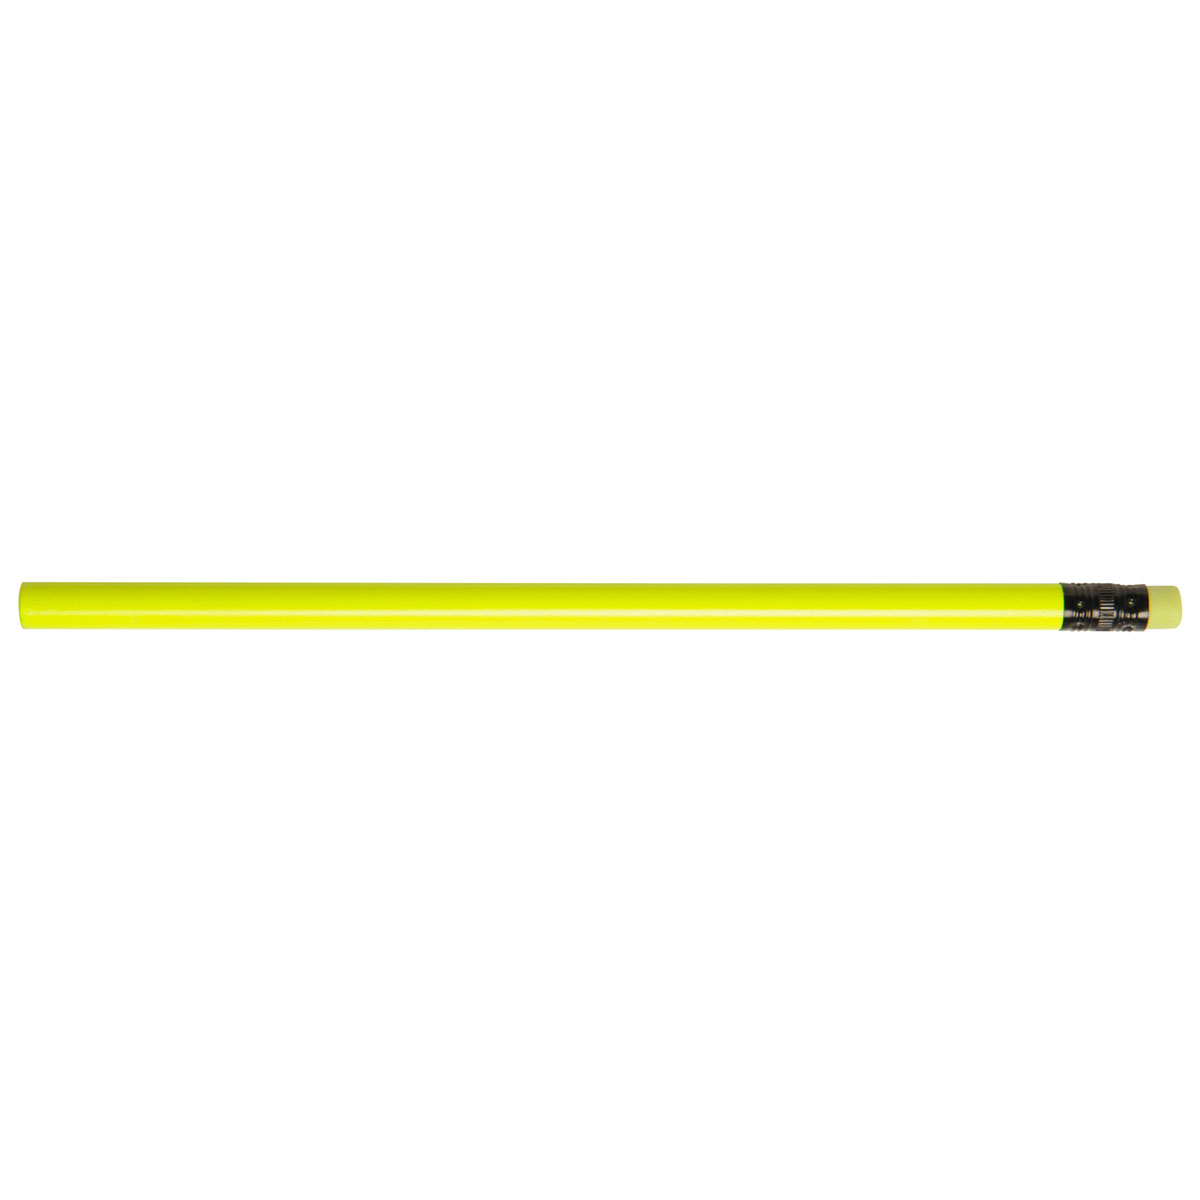 Assorted Jo-Bee Neon Pencil